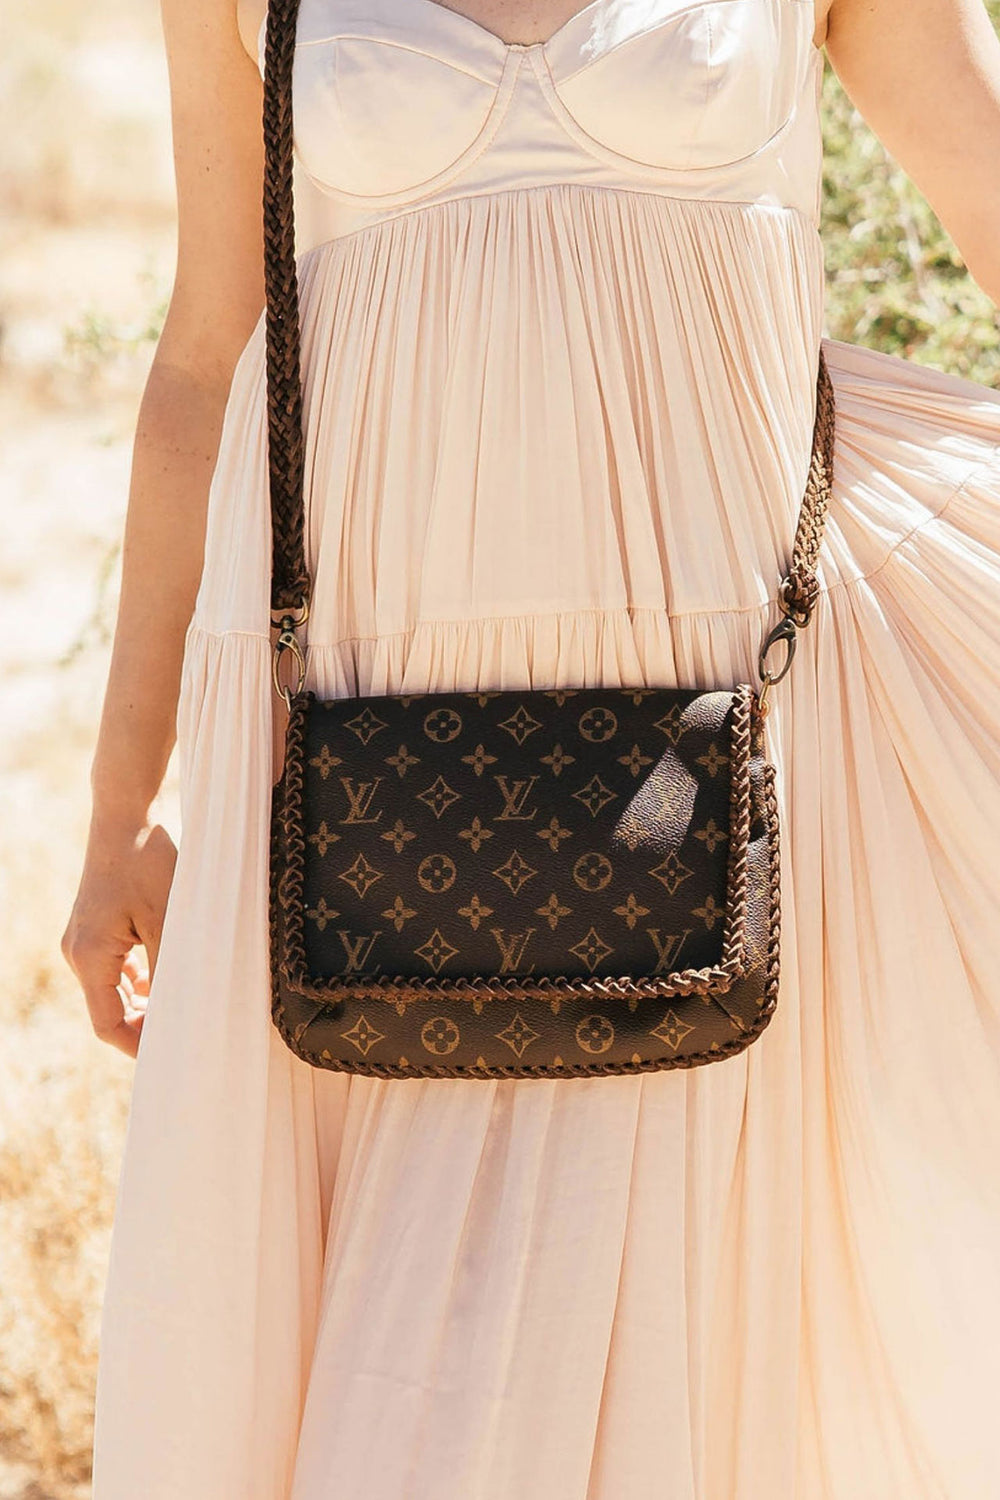 Authentic Louis Vuitton Fringe Handbag